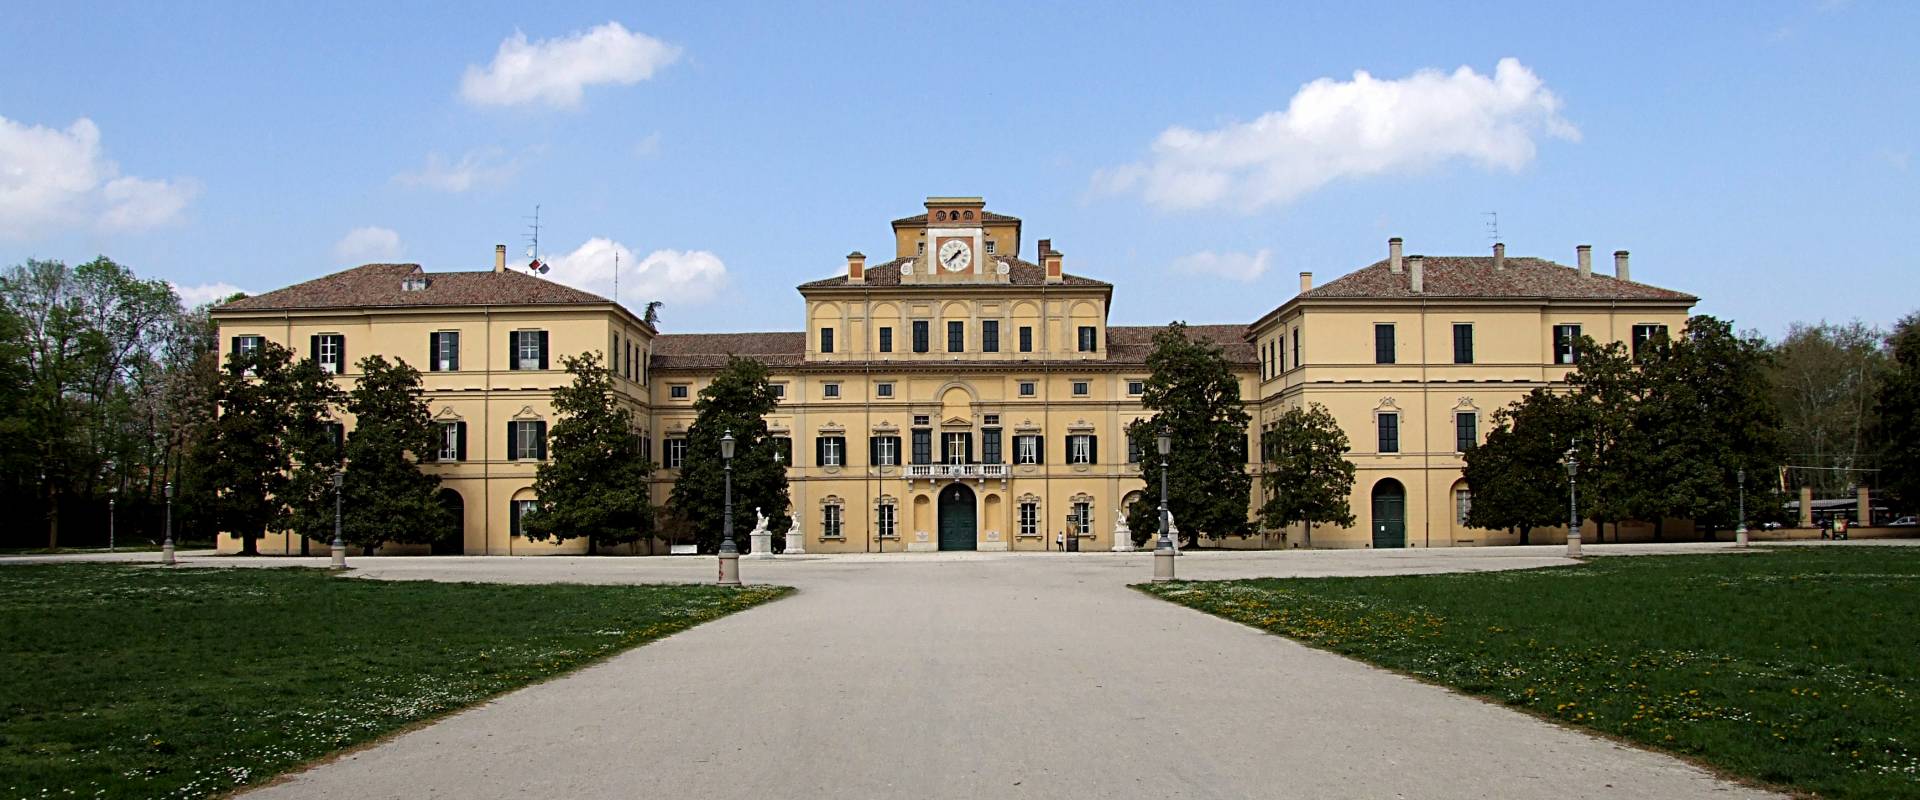 Palazzo Ducale - Parma foto di Angela Rosaria